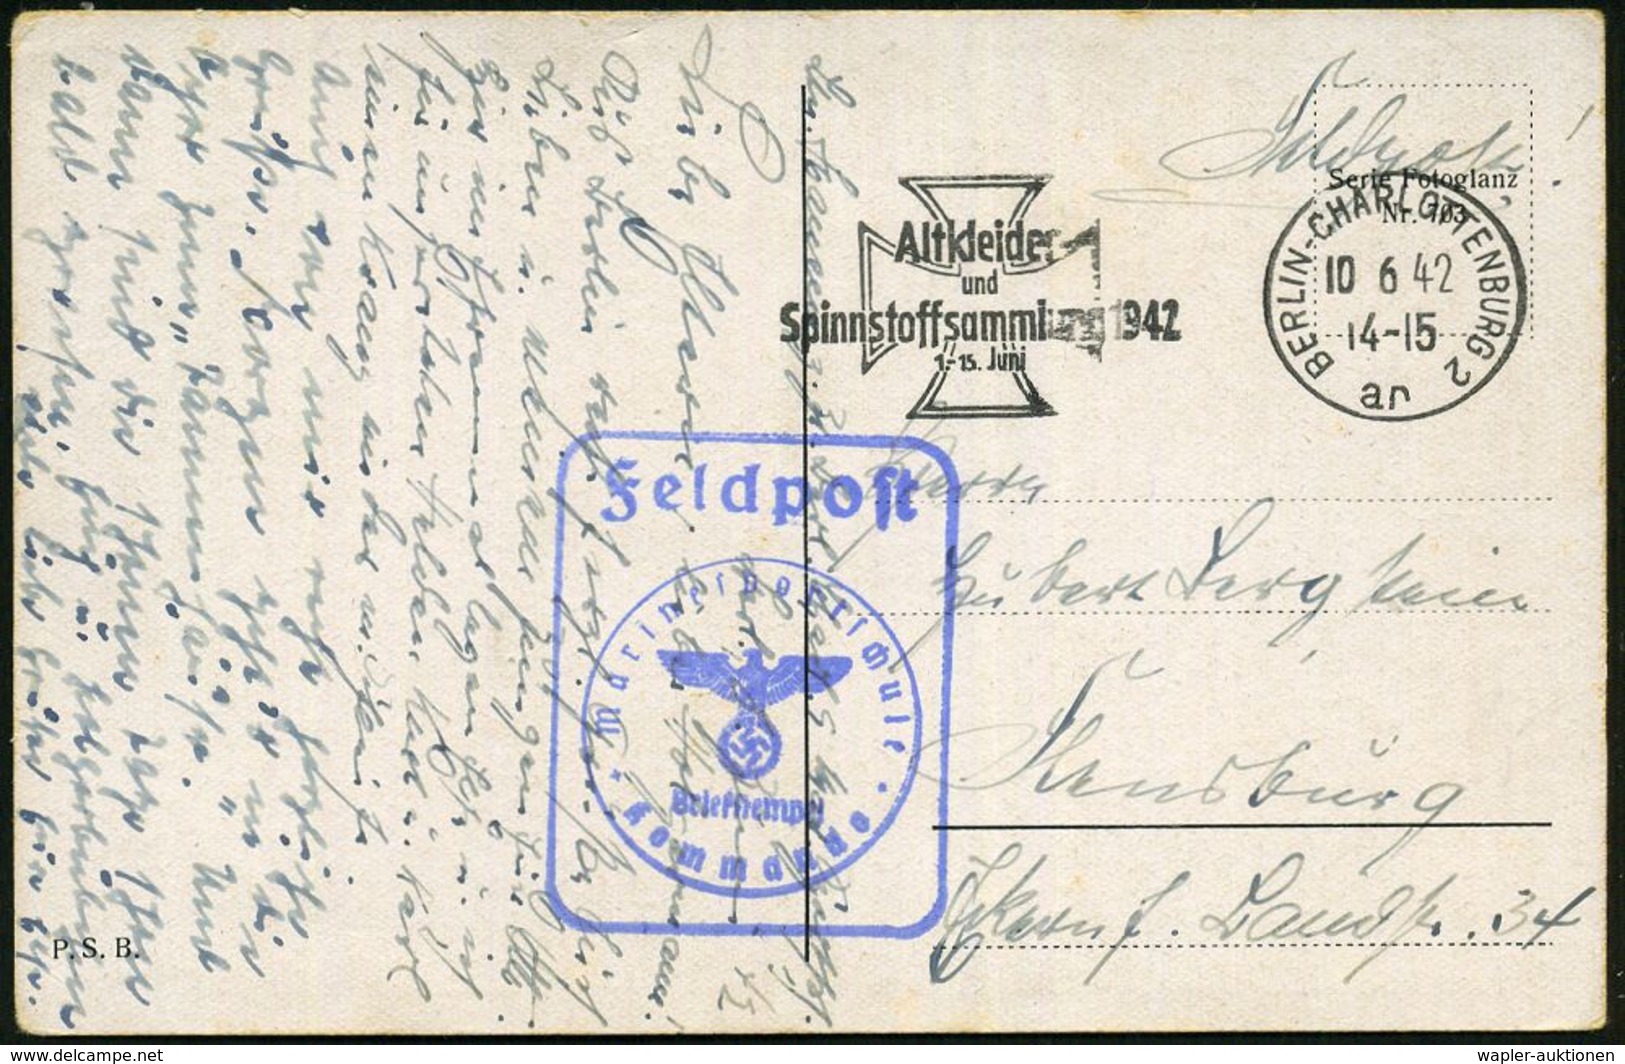 BERLIN-CHARLOTTENBURG 2/ Ar/ Altkleider/ Und/ Spinnstoffsammlung 1942 (10.6.) Seltener MWSt (Eisernes Kreuz) + Blauer Ra - Maritiem